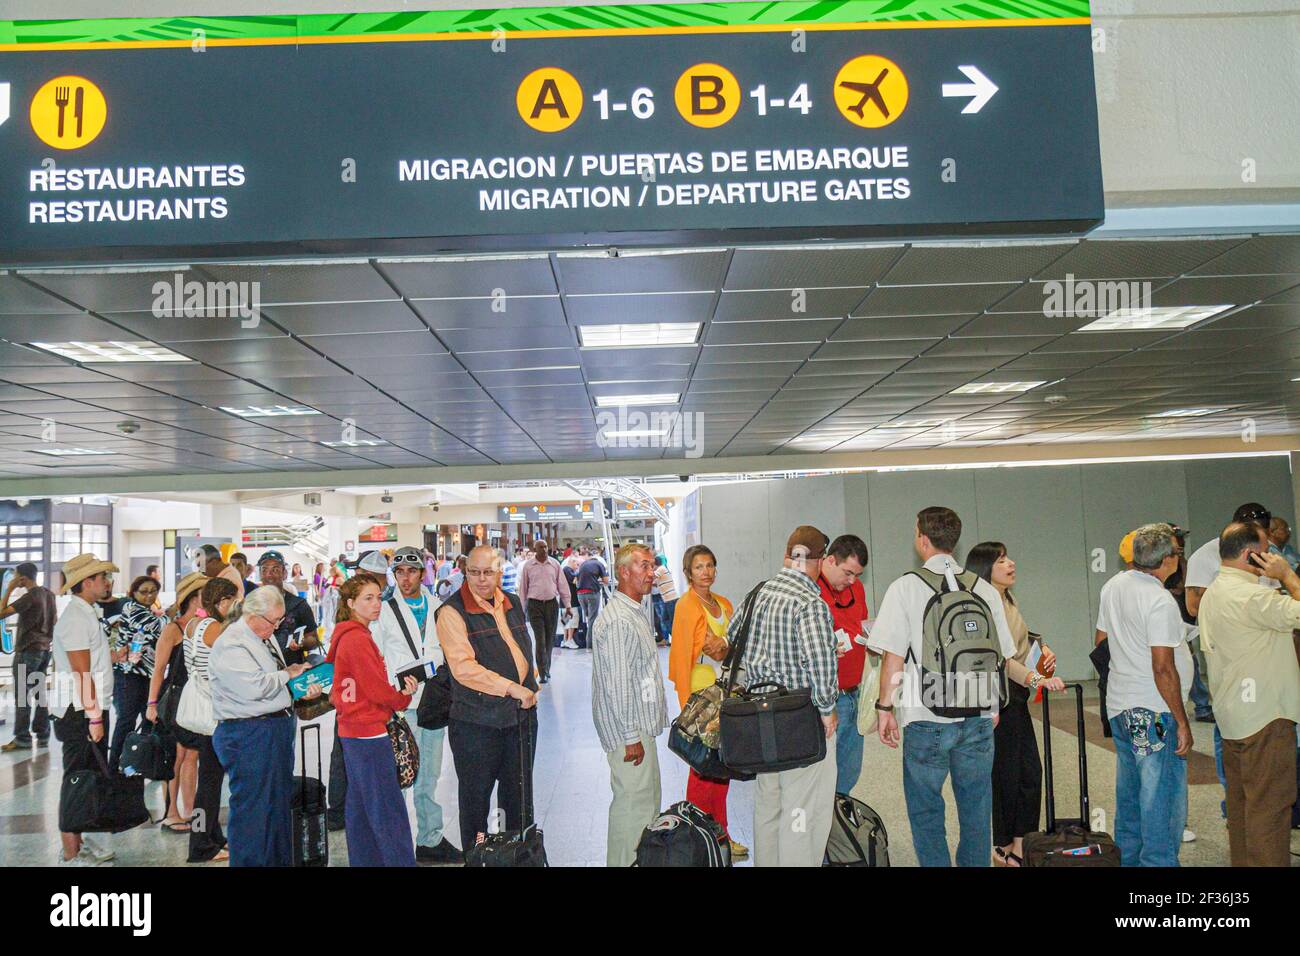 République dominicaine de Saint-Domingue, aéroport international de Las  Américas SDQ, ligne de départ de migration file d'attente voyageurs, hommes  hispaniques femmes Photo Stock - Alamy